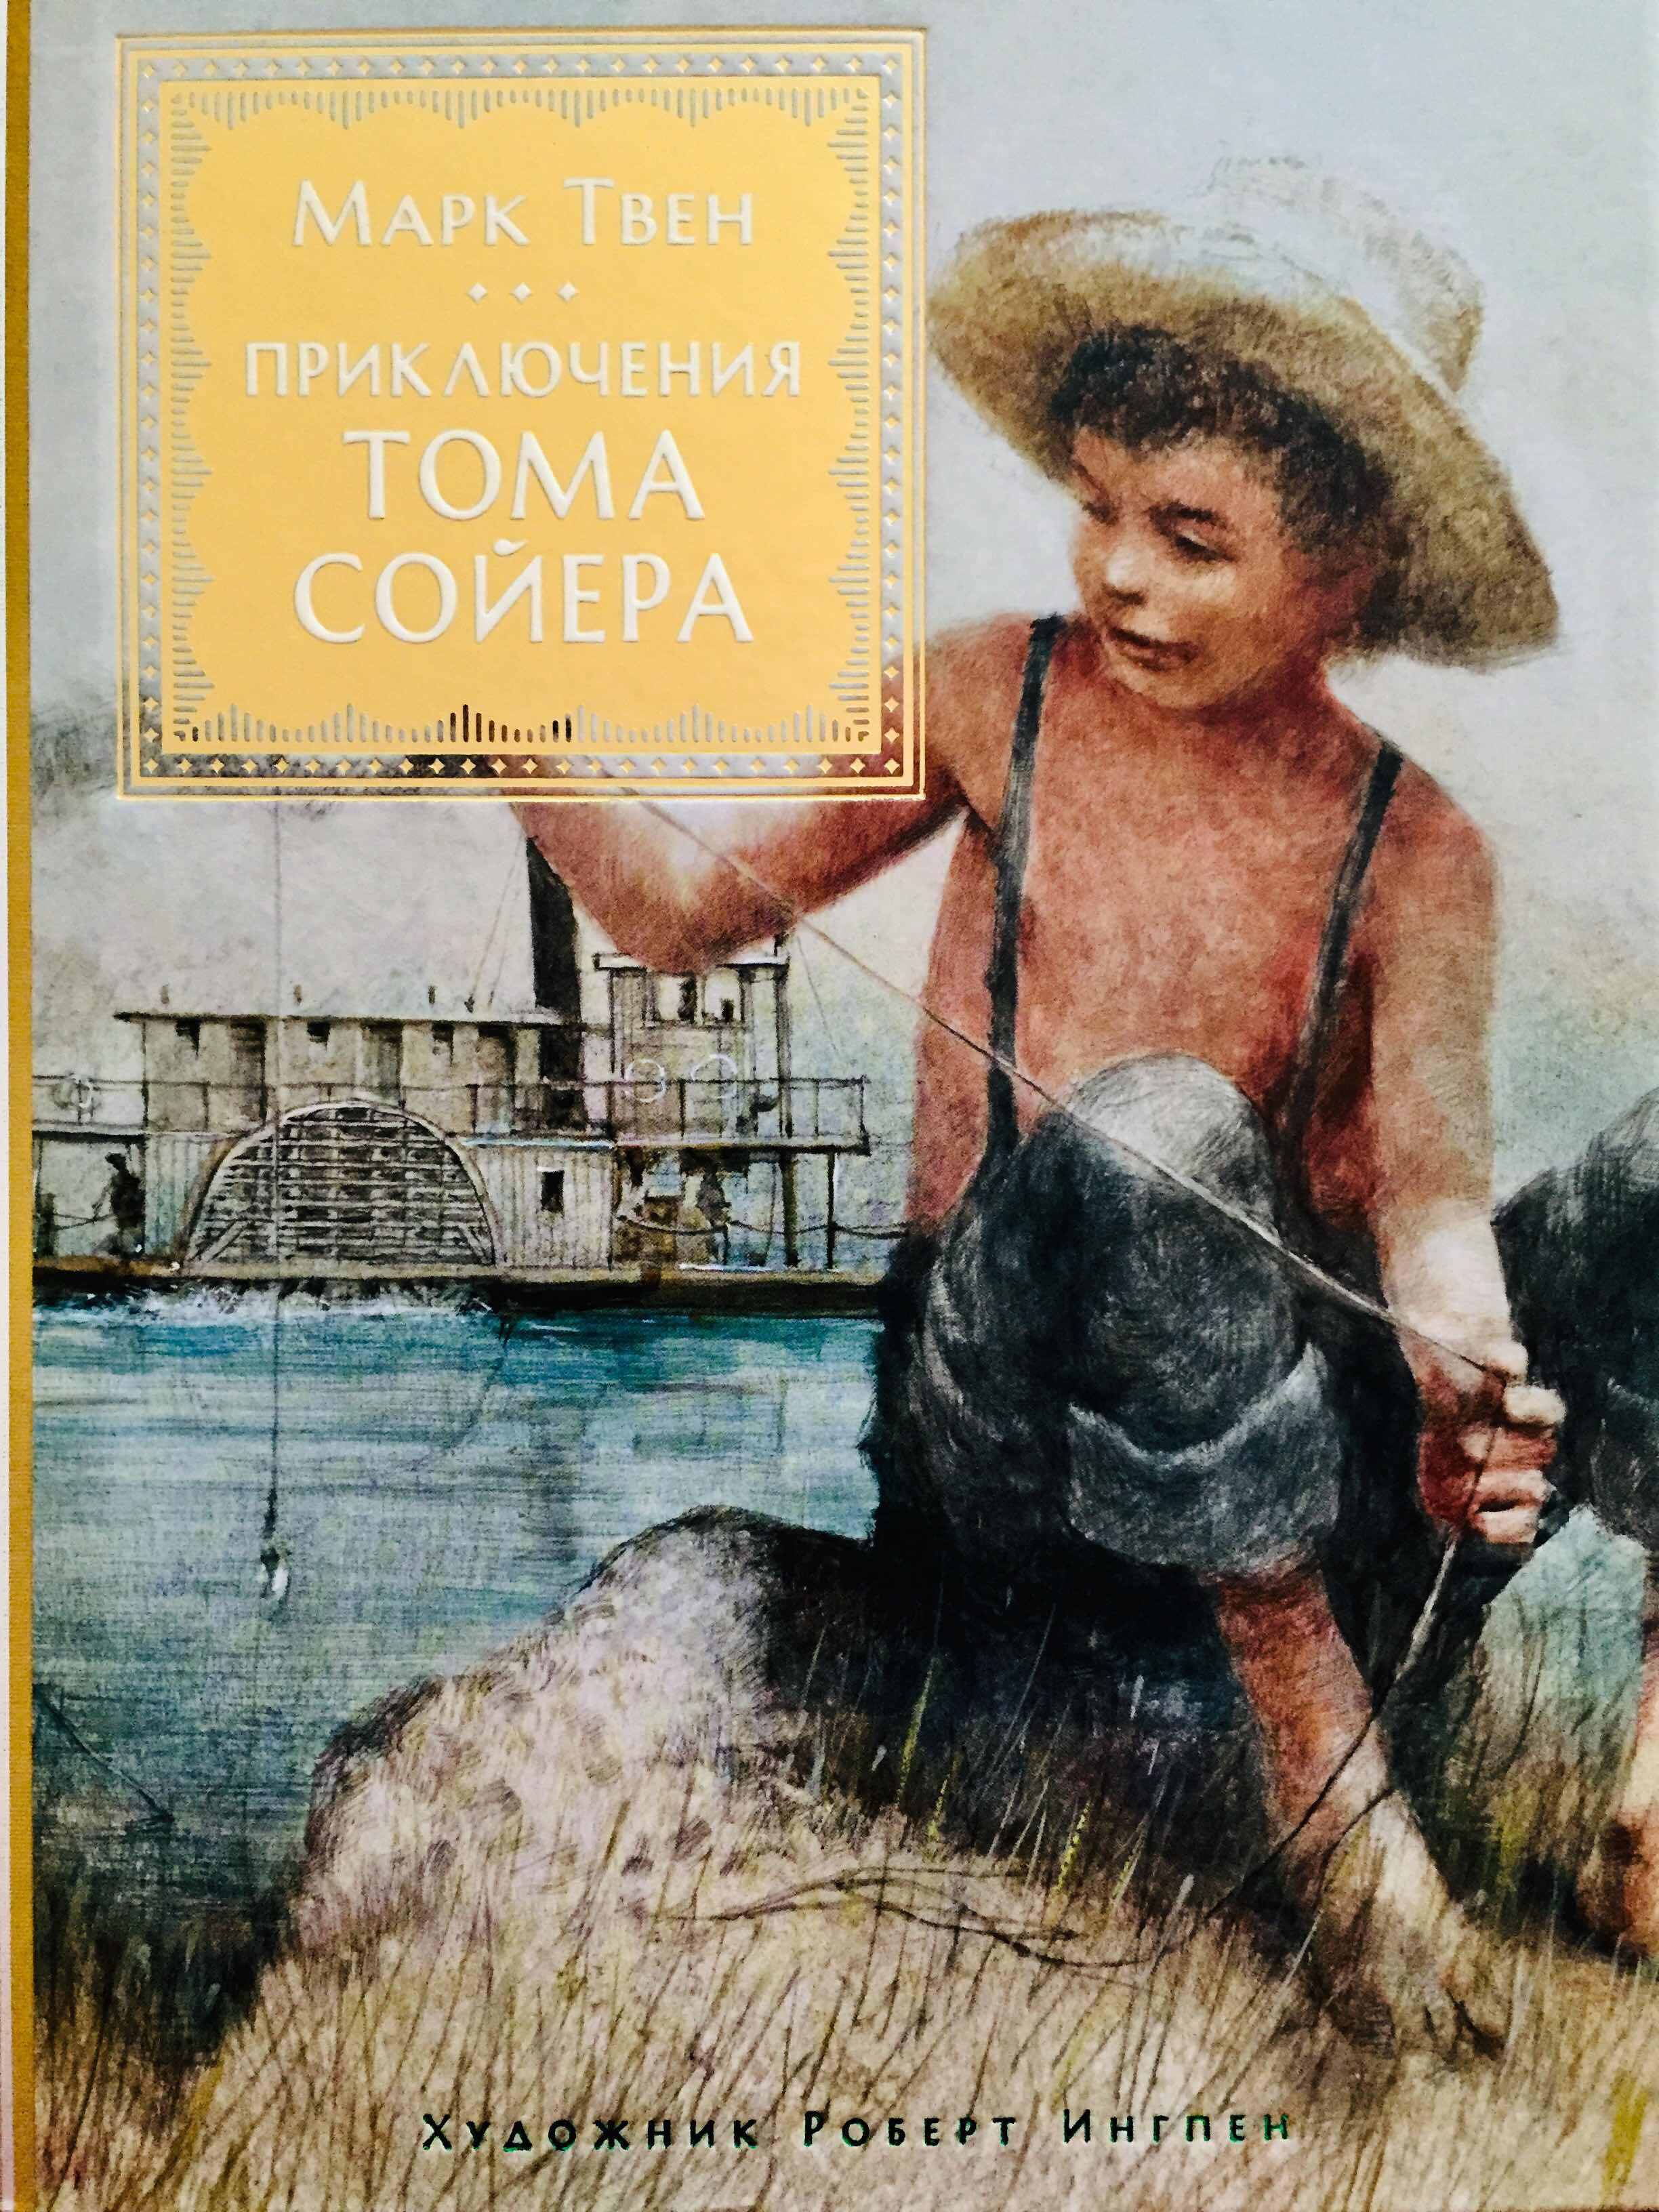 Приключения тома сойера читать главы. Твен м. "приключения Тома Сойера".